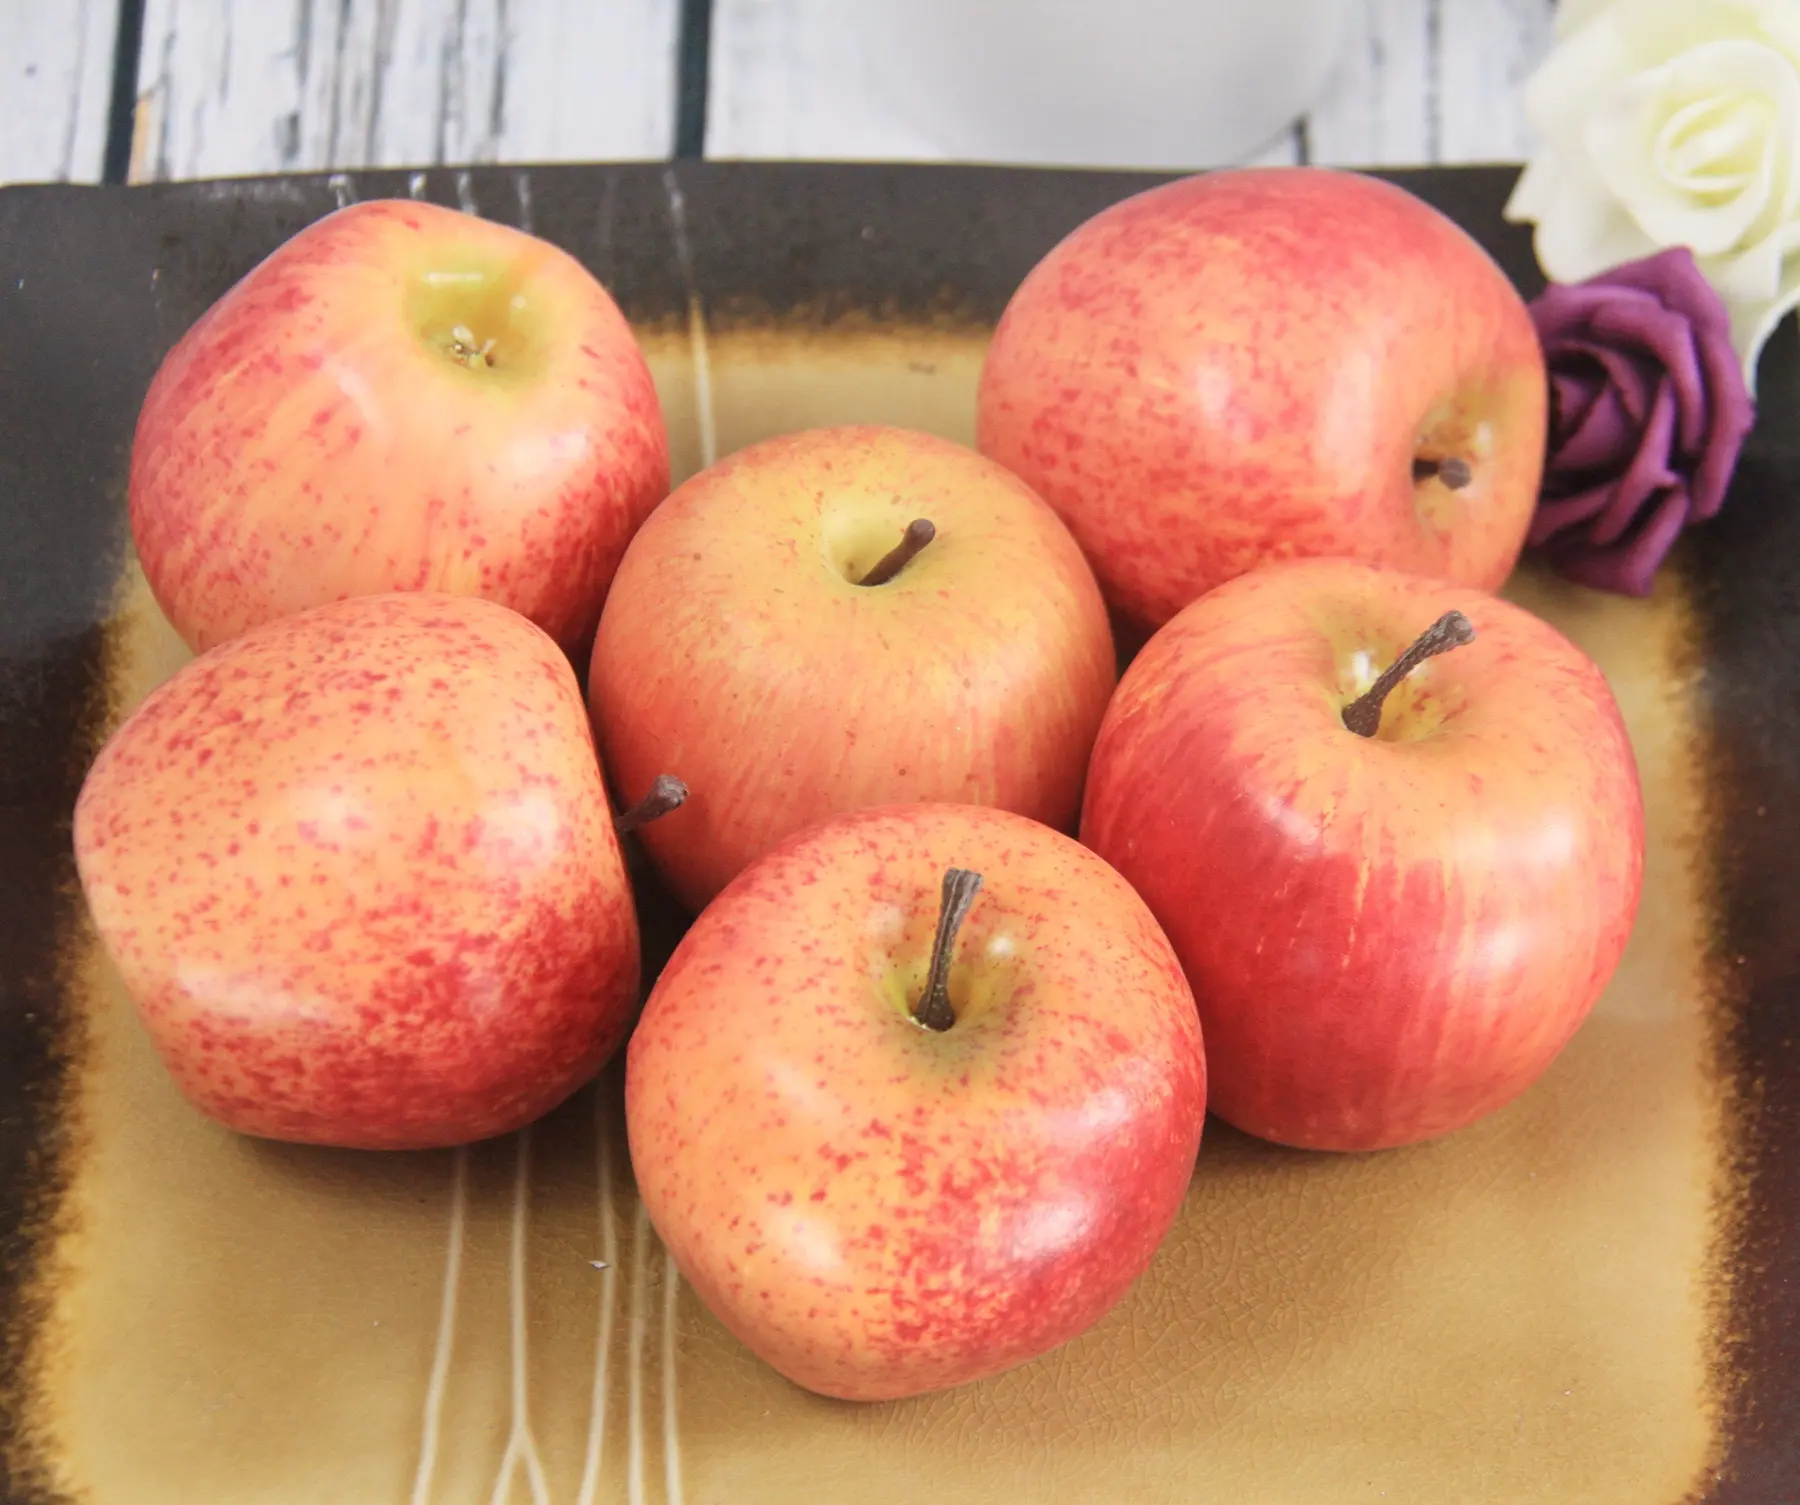 인공 과일 시뮬레이션 사과 후지 사과 거품 소재 다채로운 사과